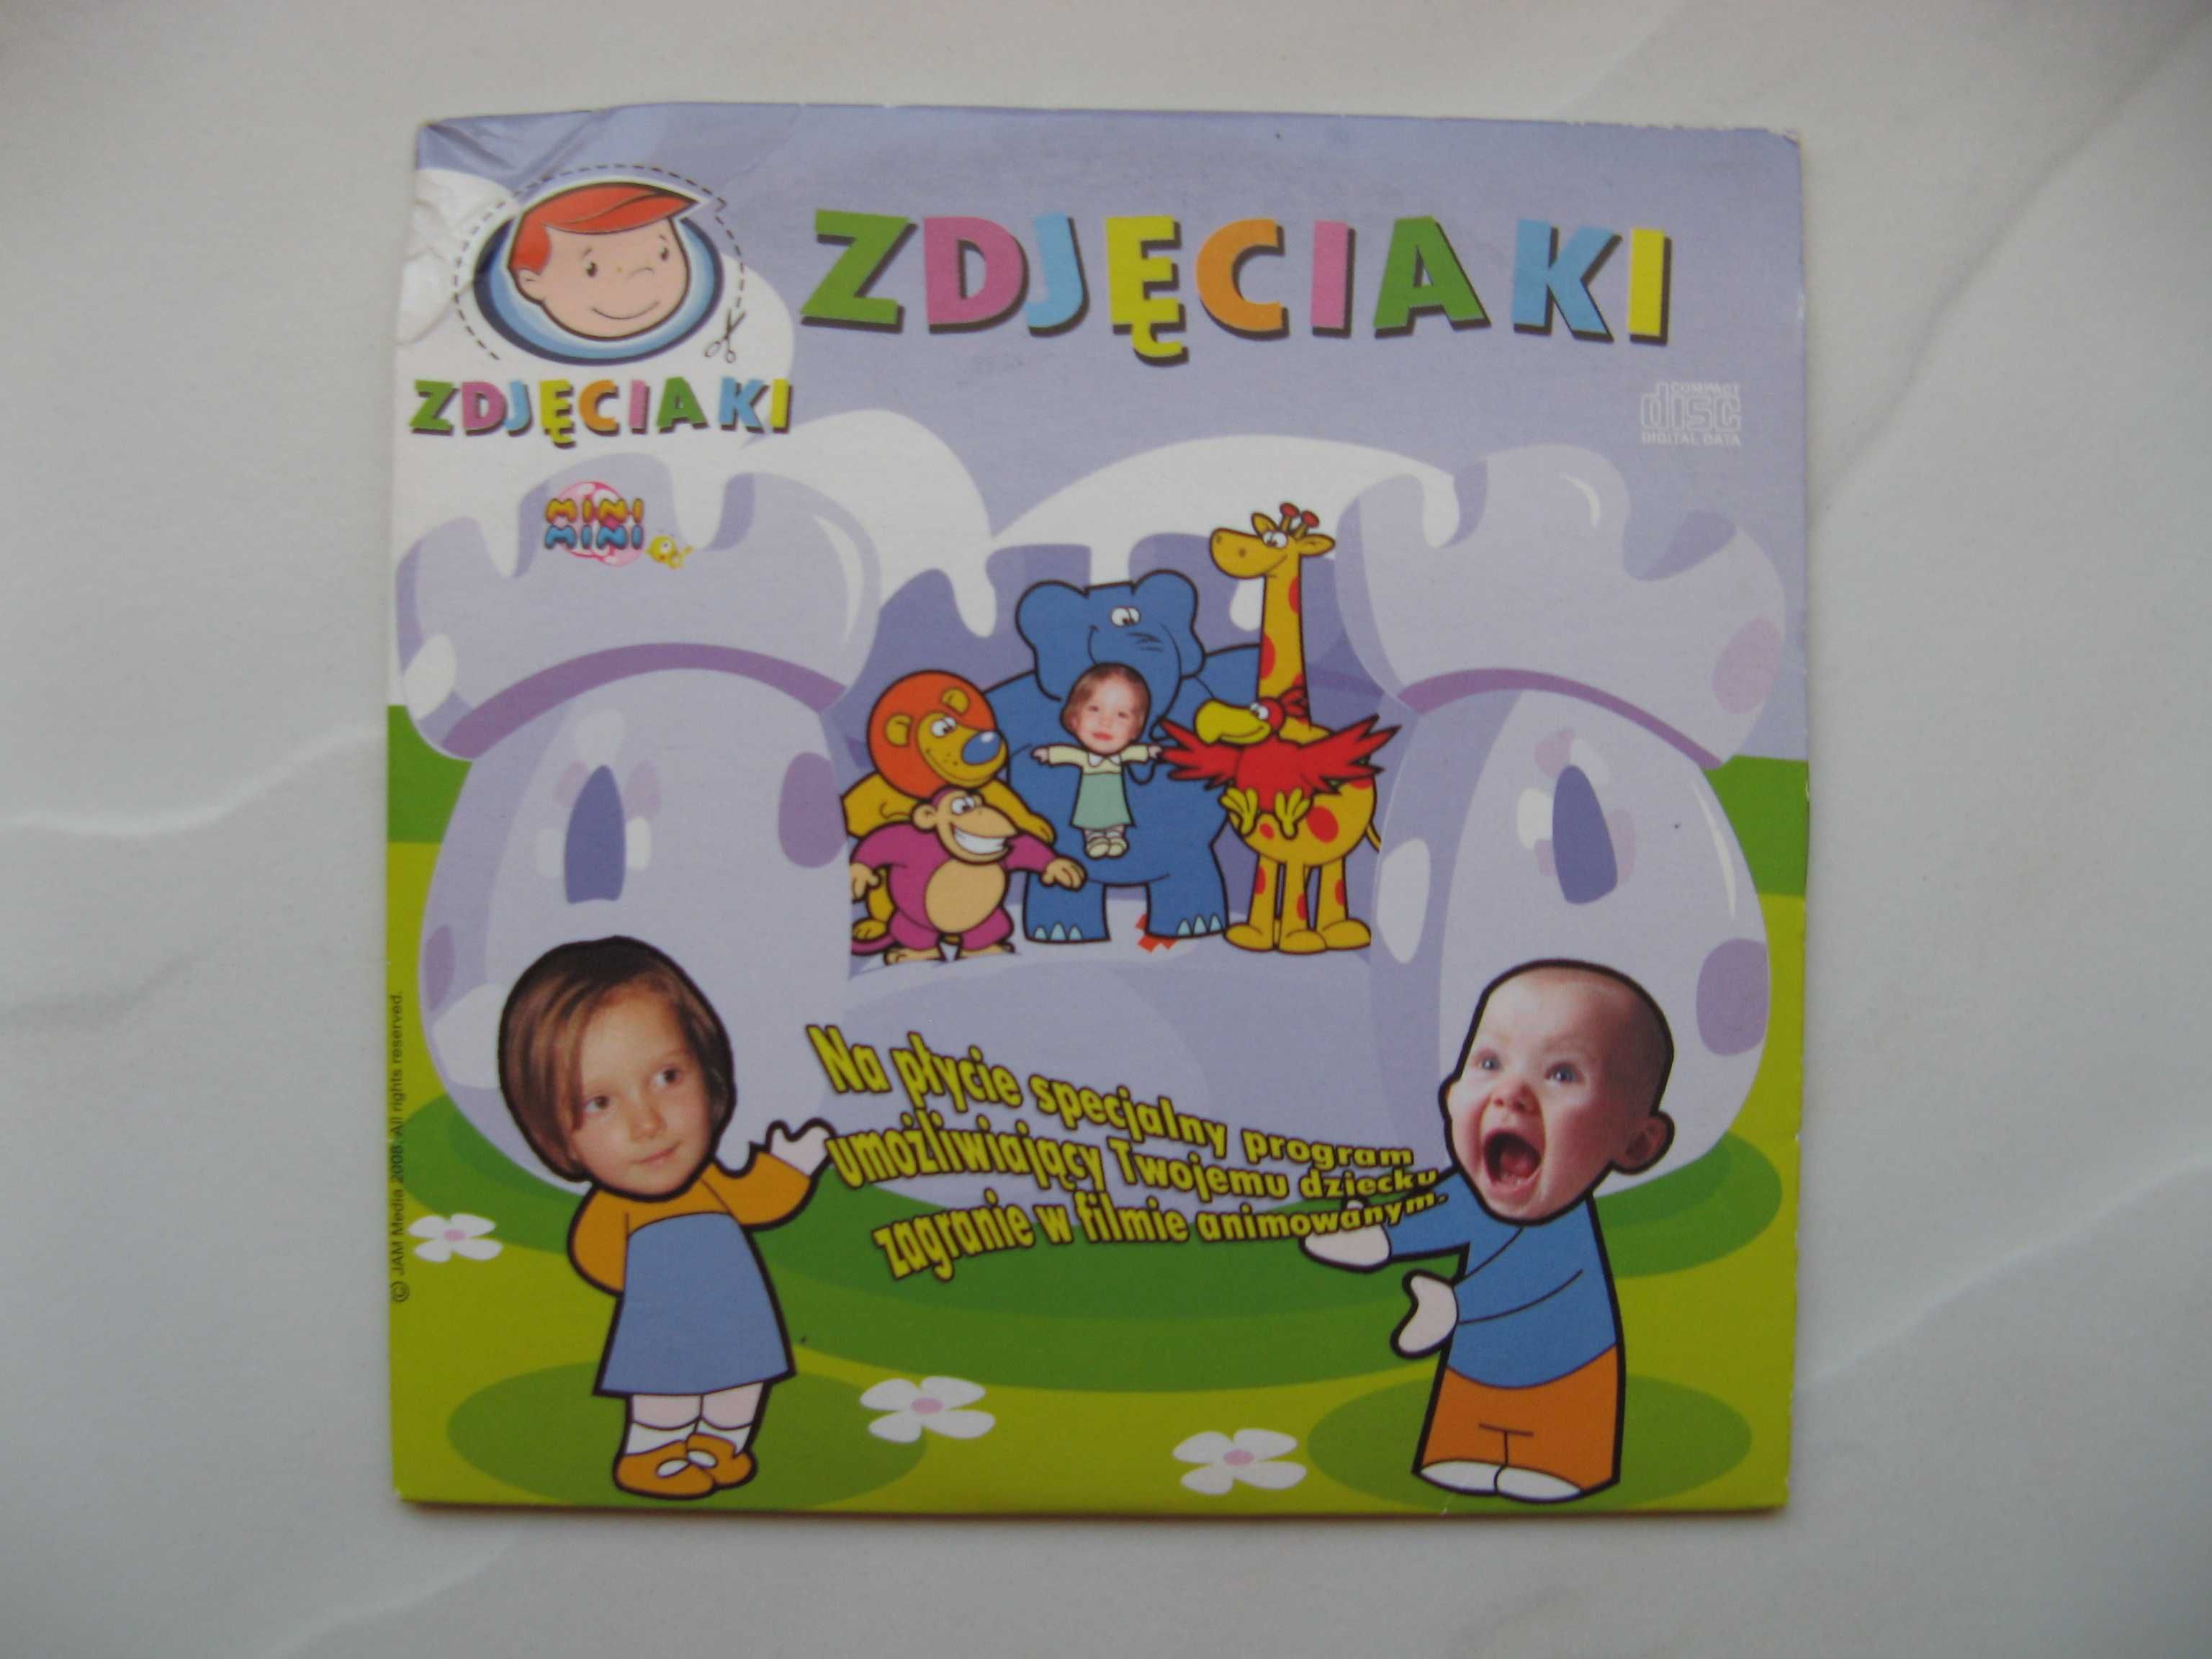 Mini Mini: Zdjęciaki - 13 odcinków + płyta z programem, polski dubbing